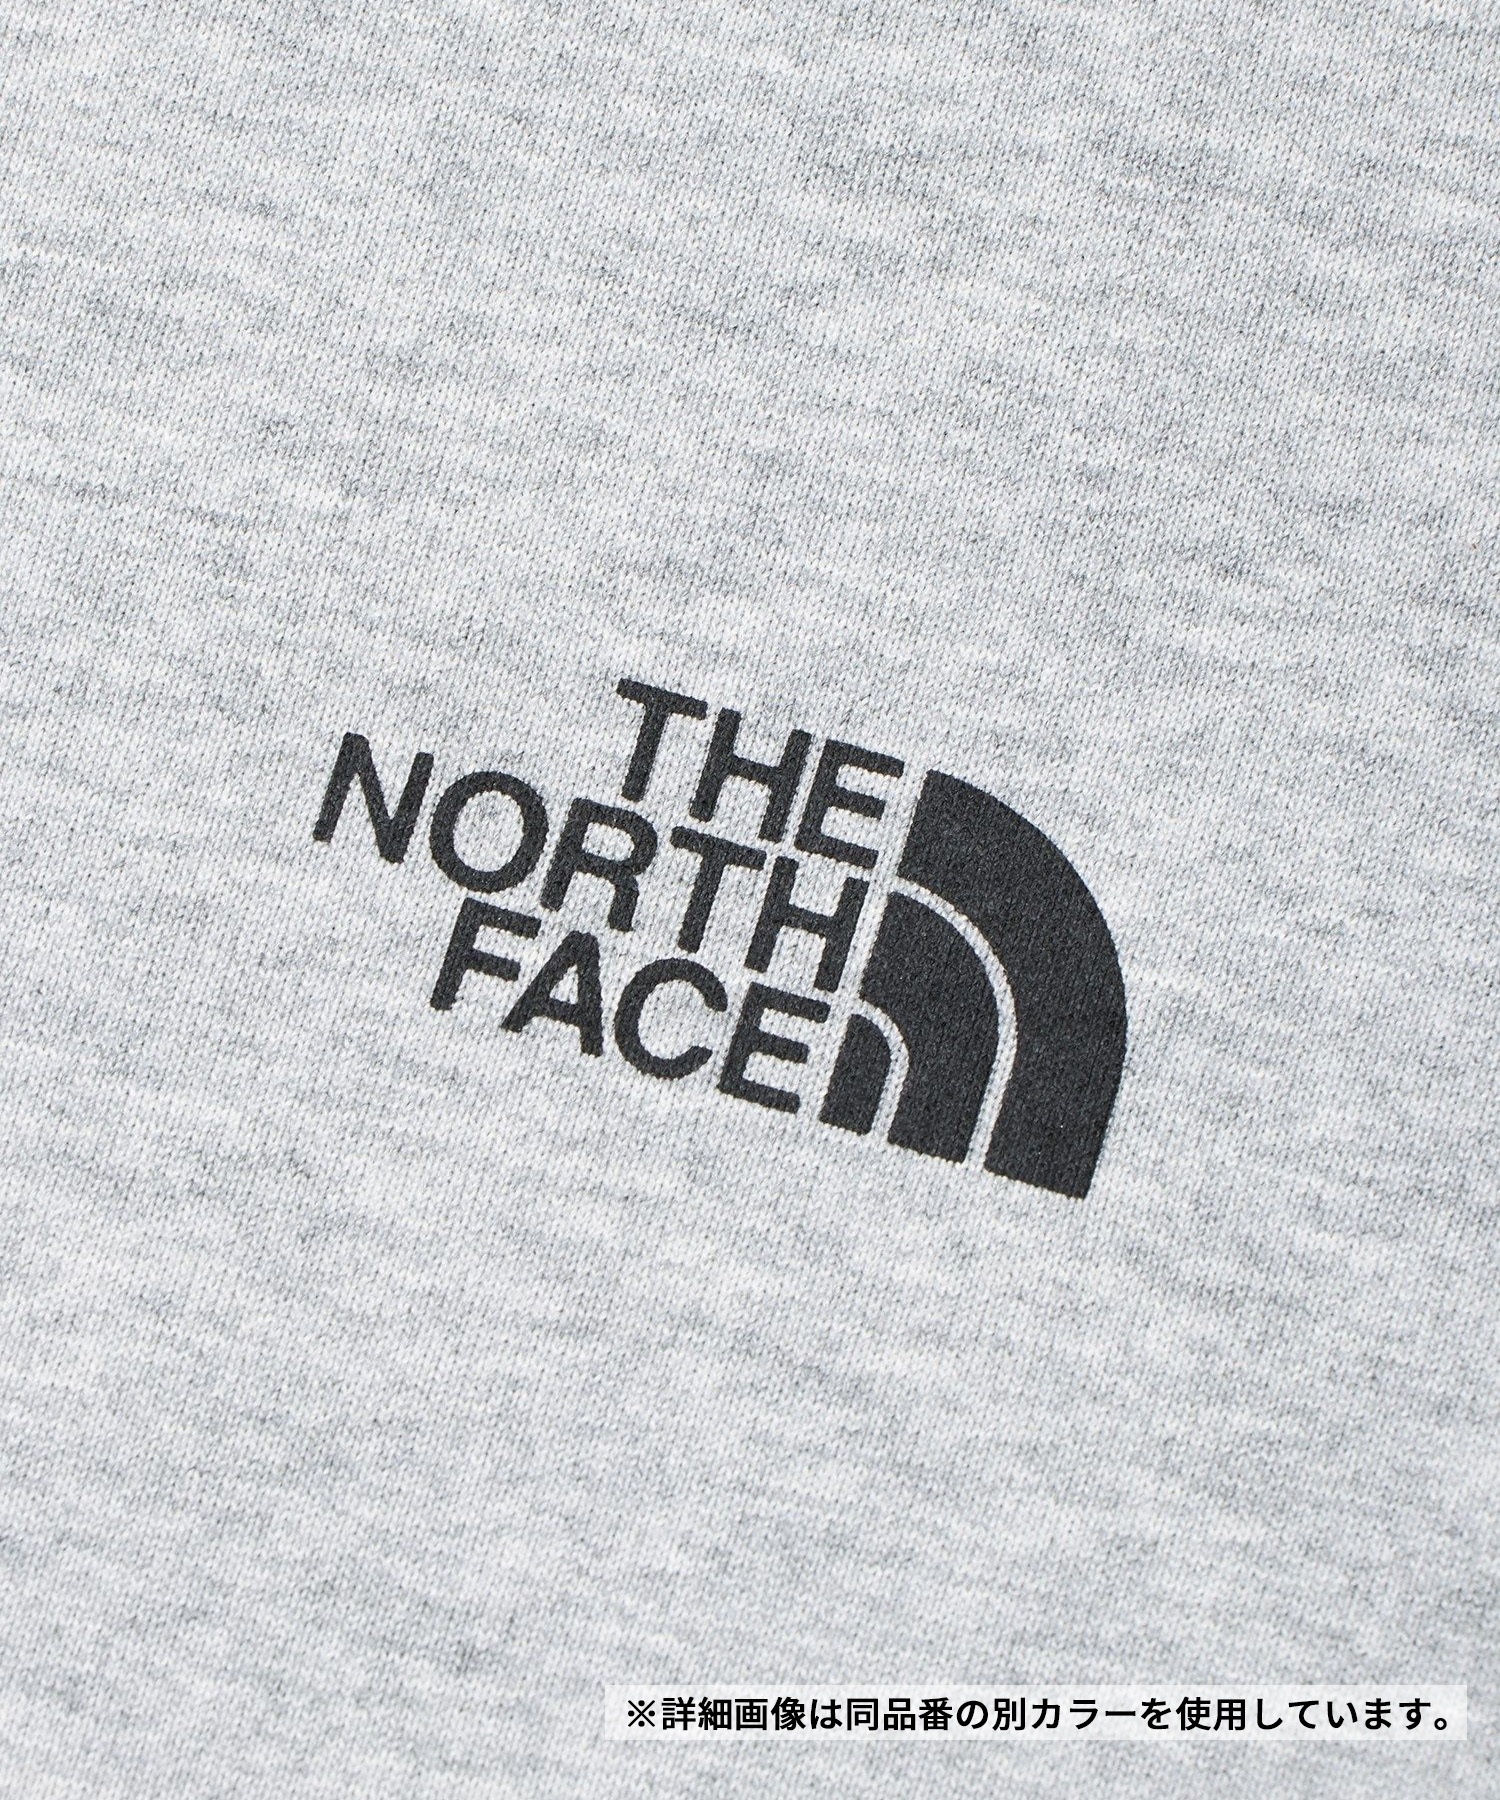 THE NORTH FACE ザ・ノース・フェイス メンズ Tシャツ 半袖 ショートスリーブナチュラルフェノメノンティー NT32459 W(W-M)